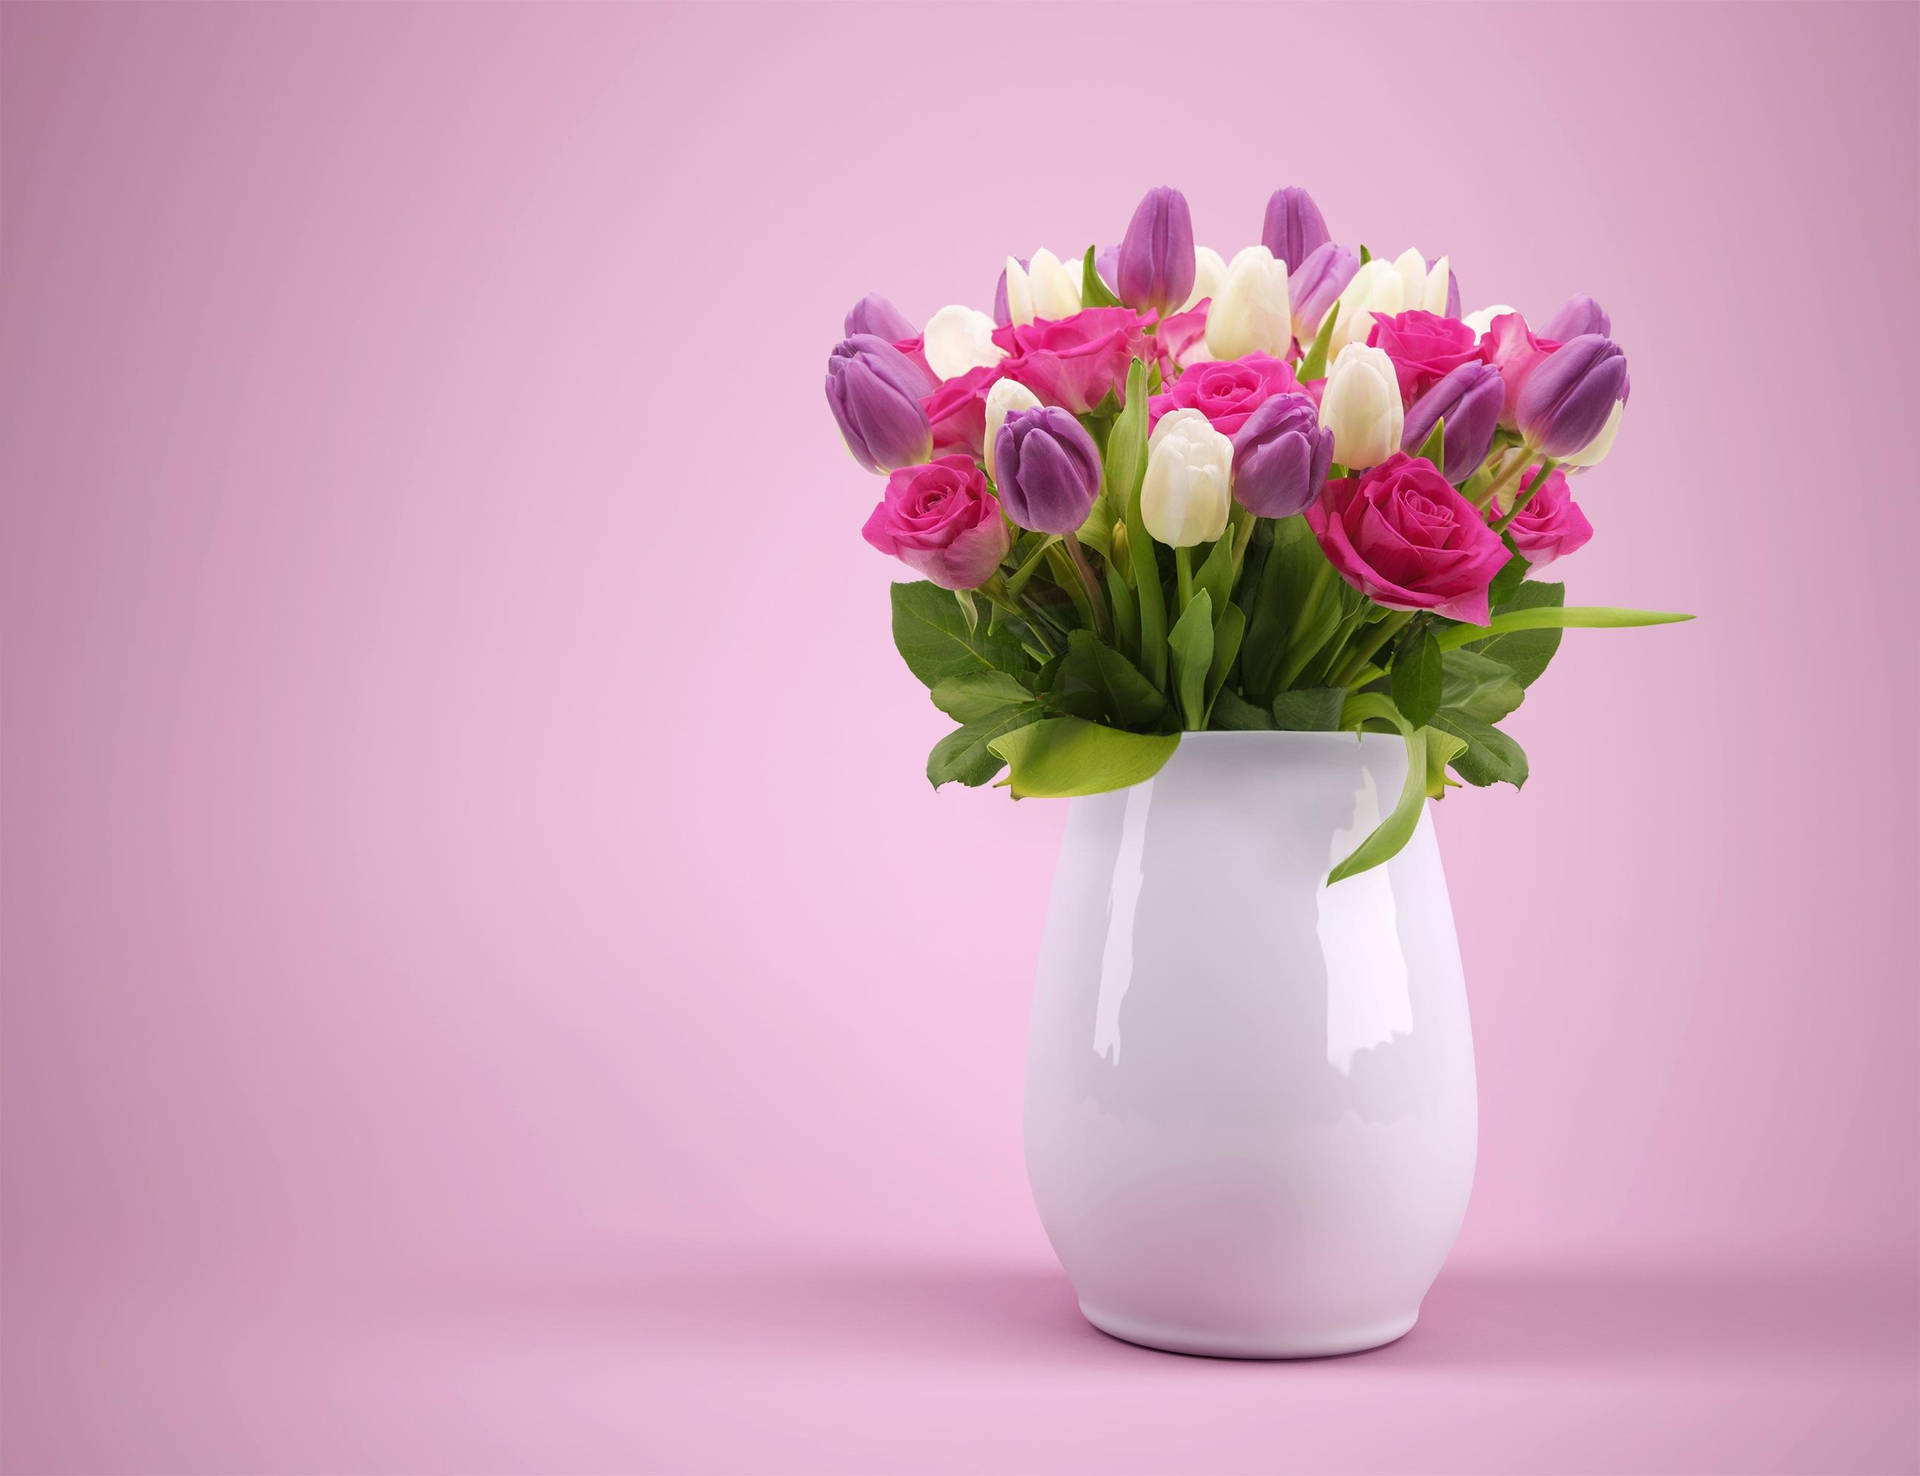 Blommevase med tulipaner og roser Wallpaper